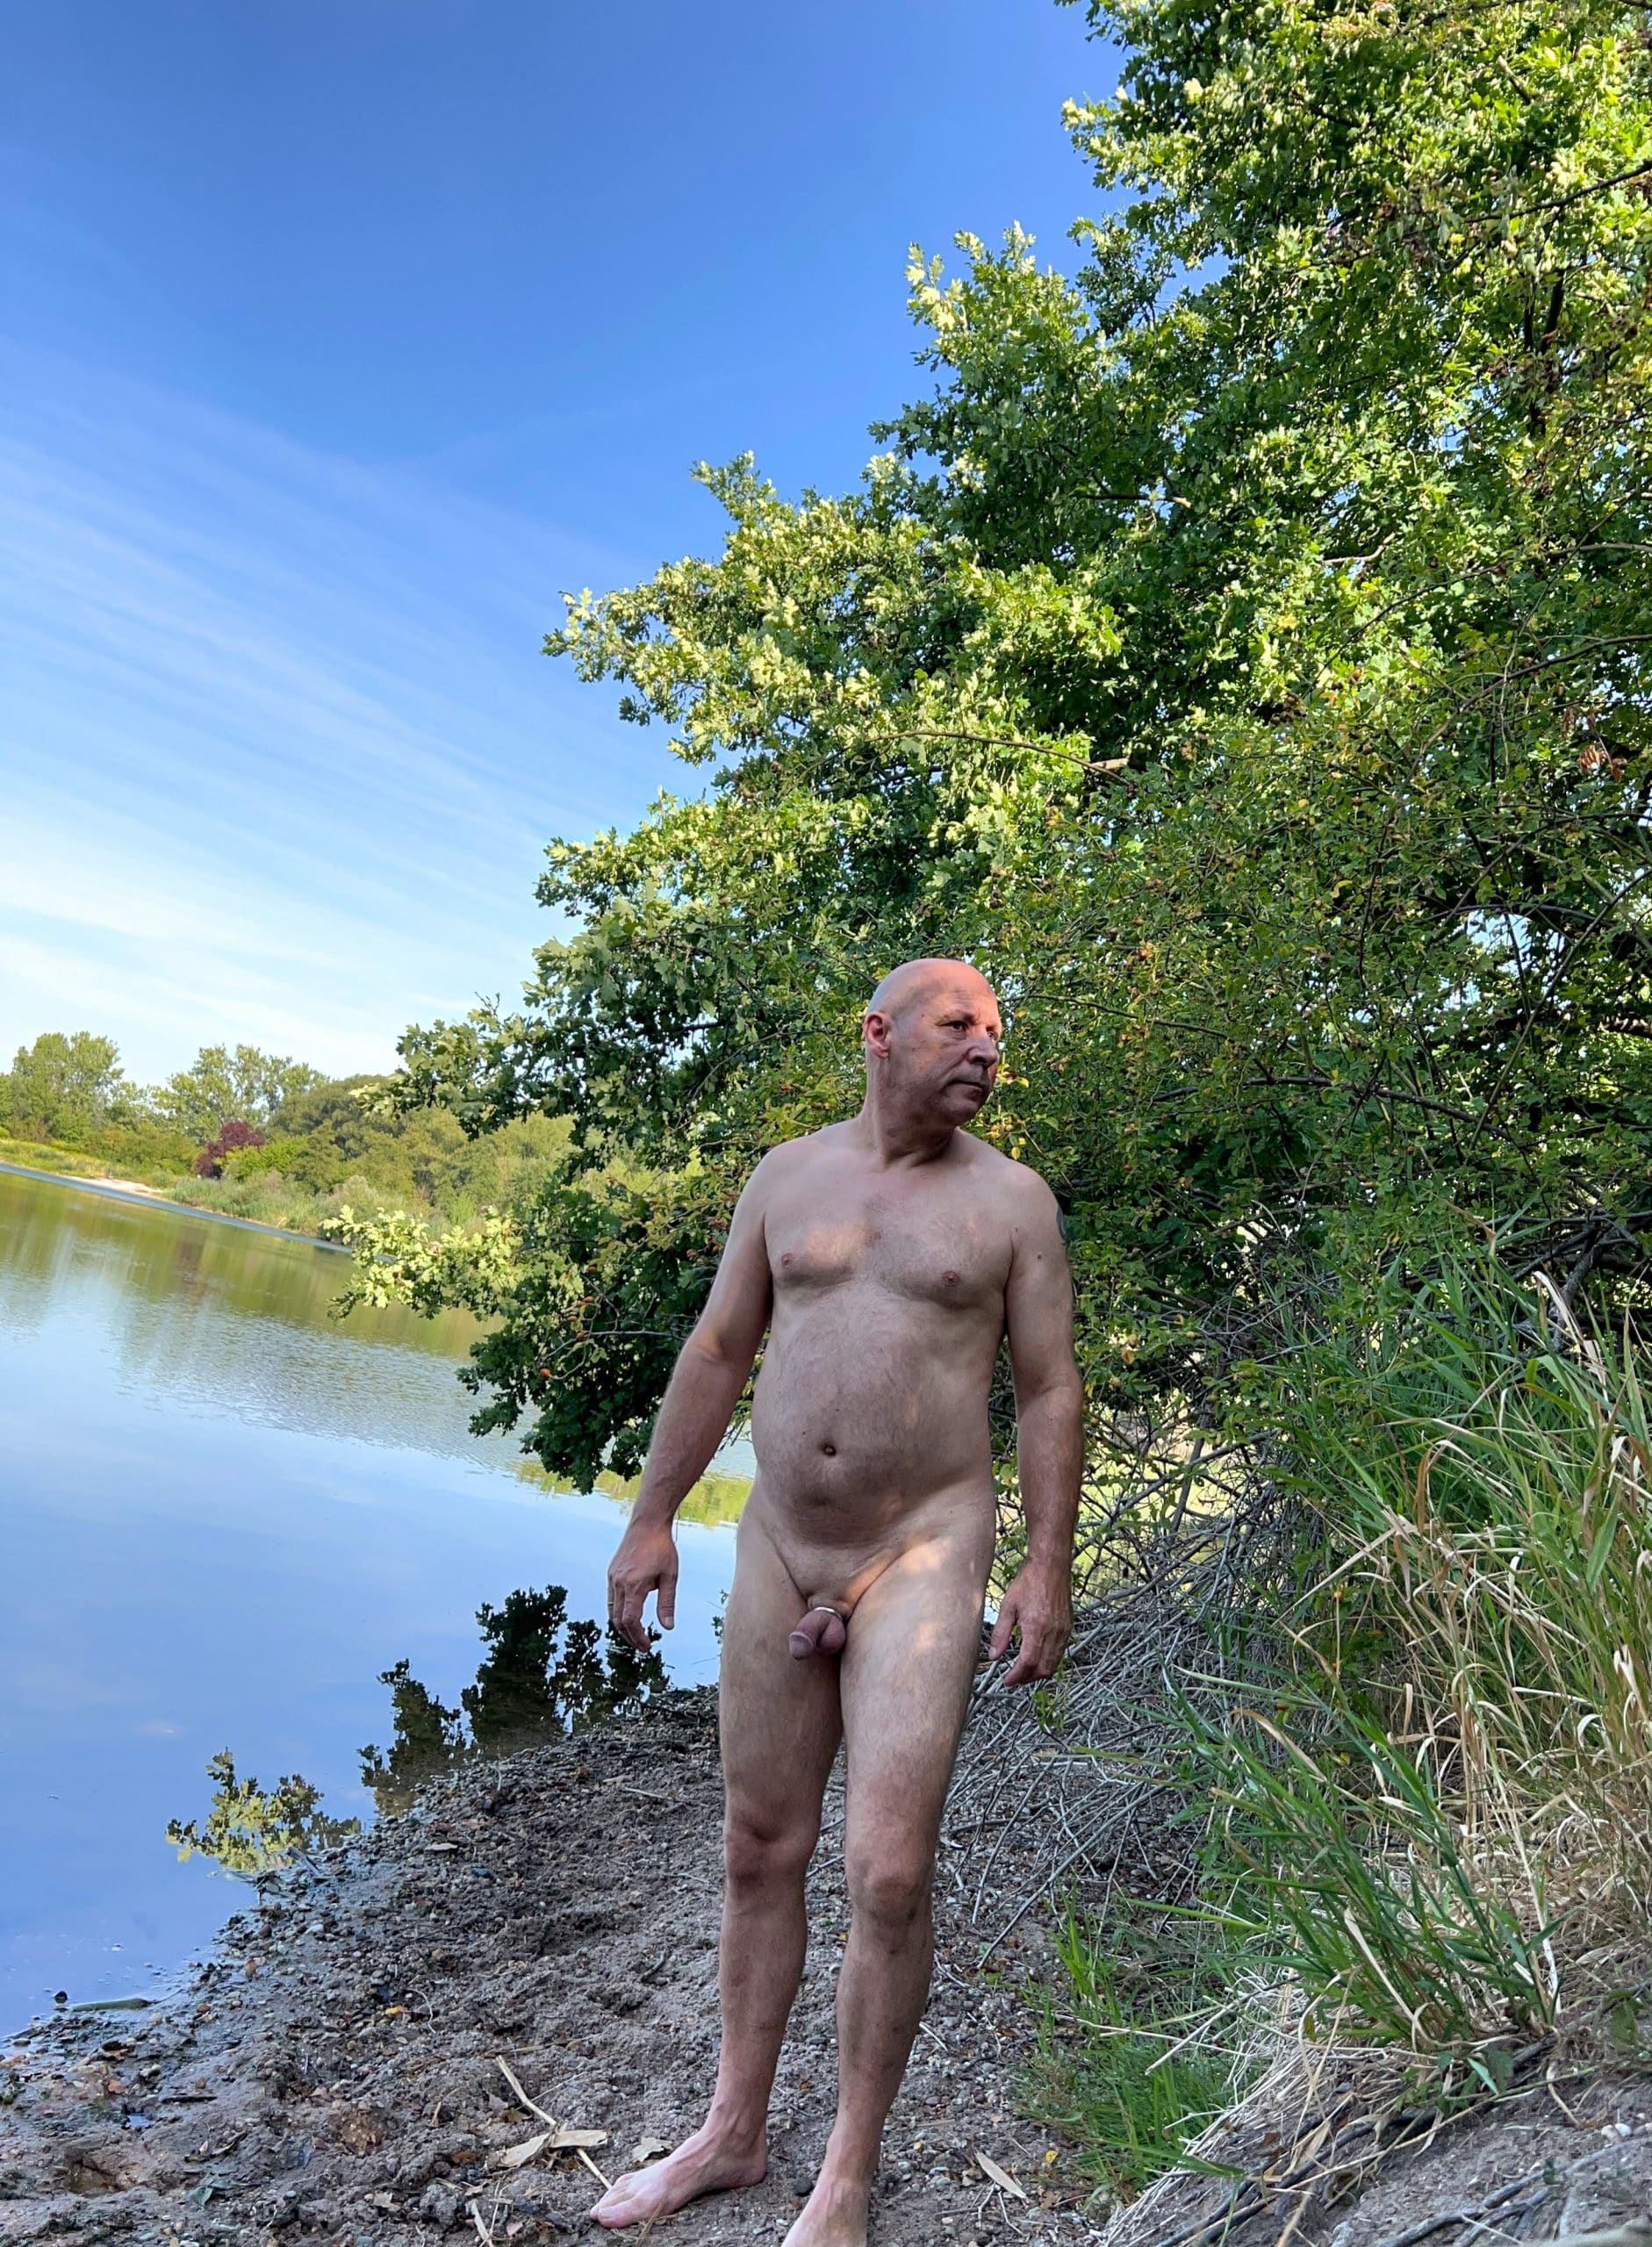 Real Amateurs Public Nudity Pics Dick Flash Pics  : Nackt am See